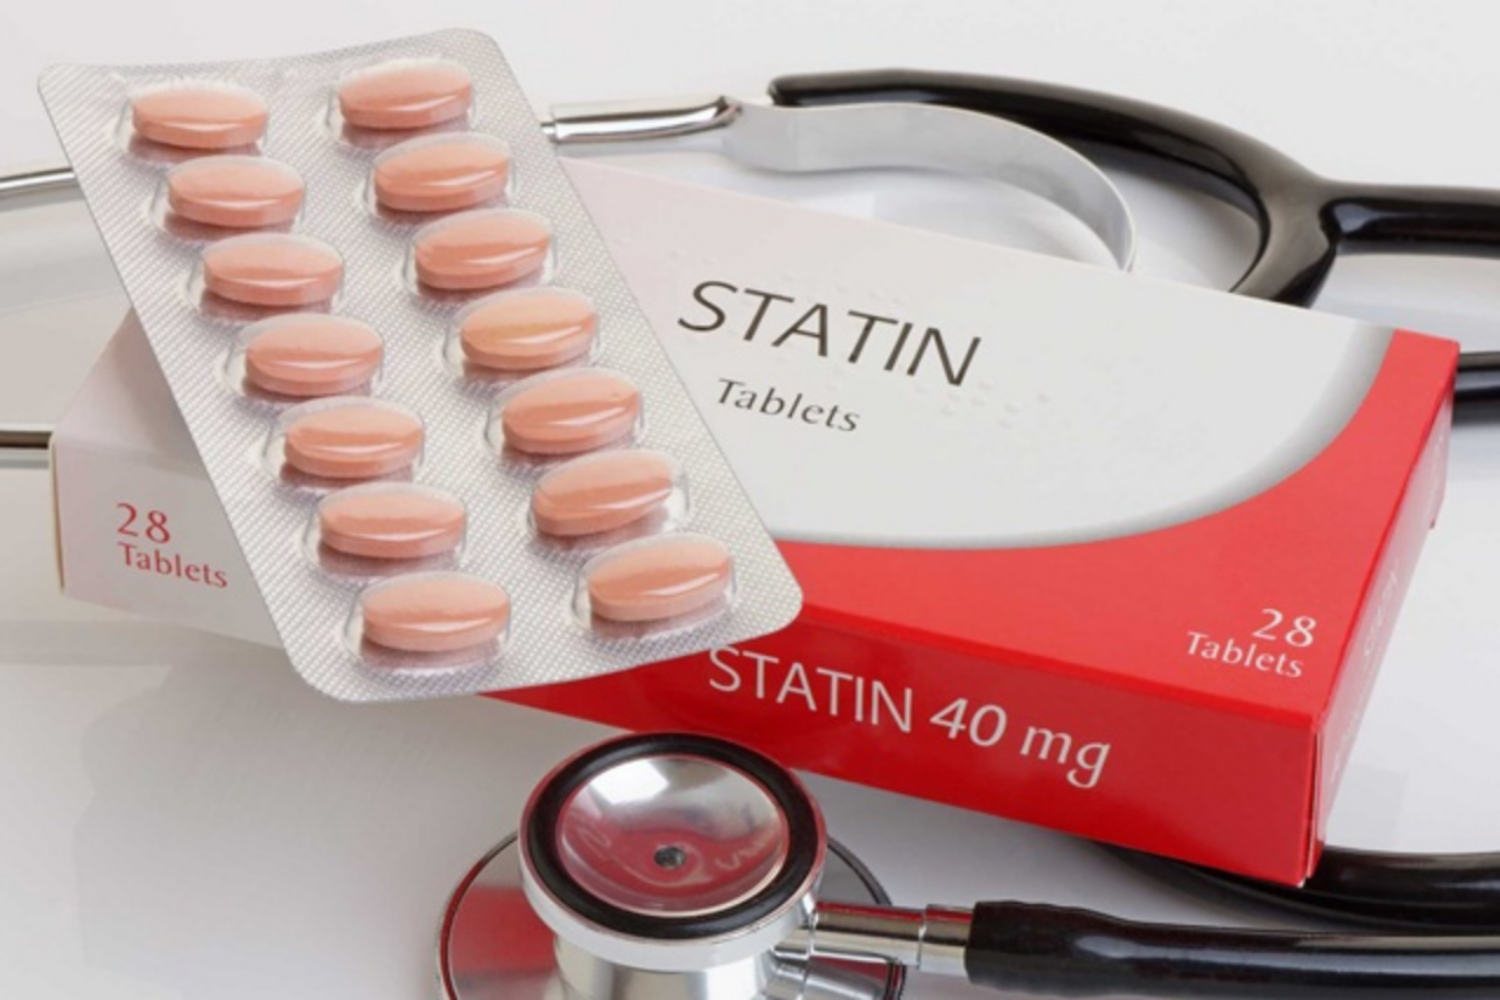 Bị tiểu đường nên chọn loại statin nào?